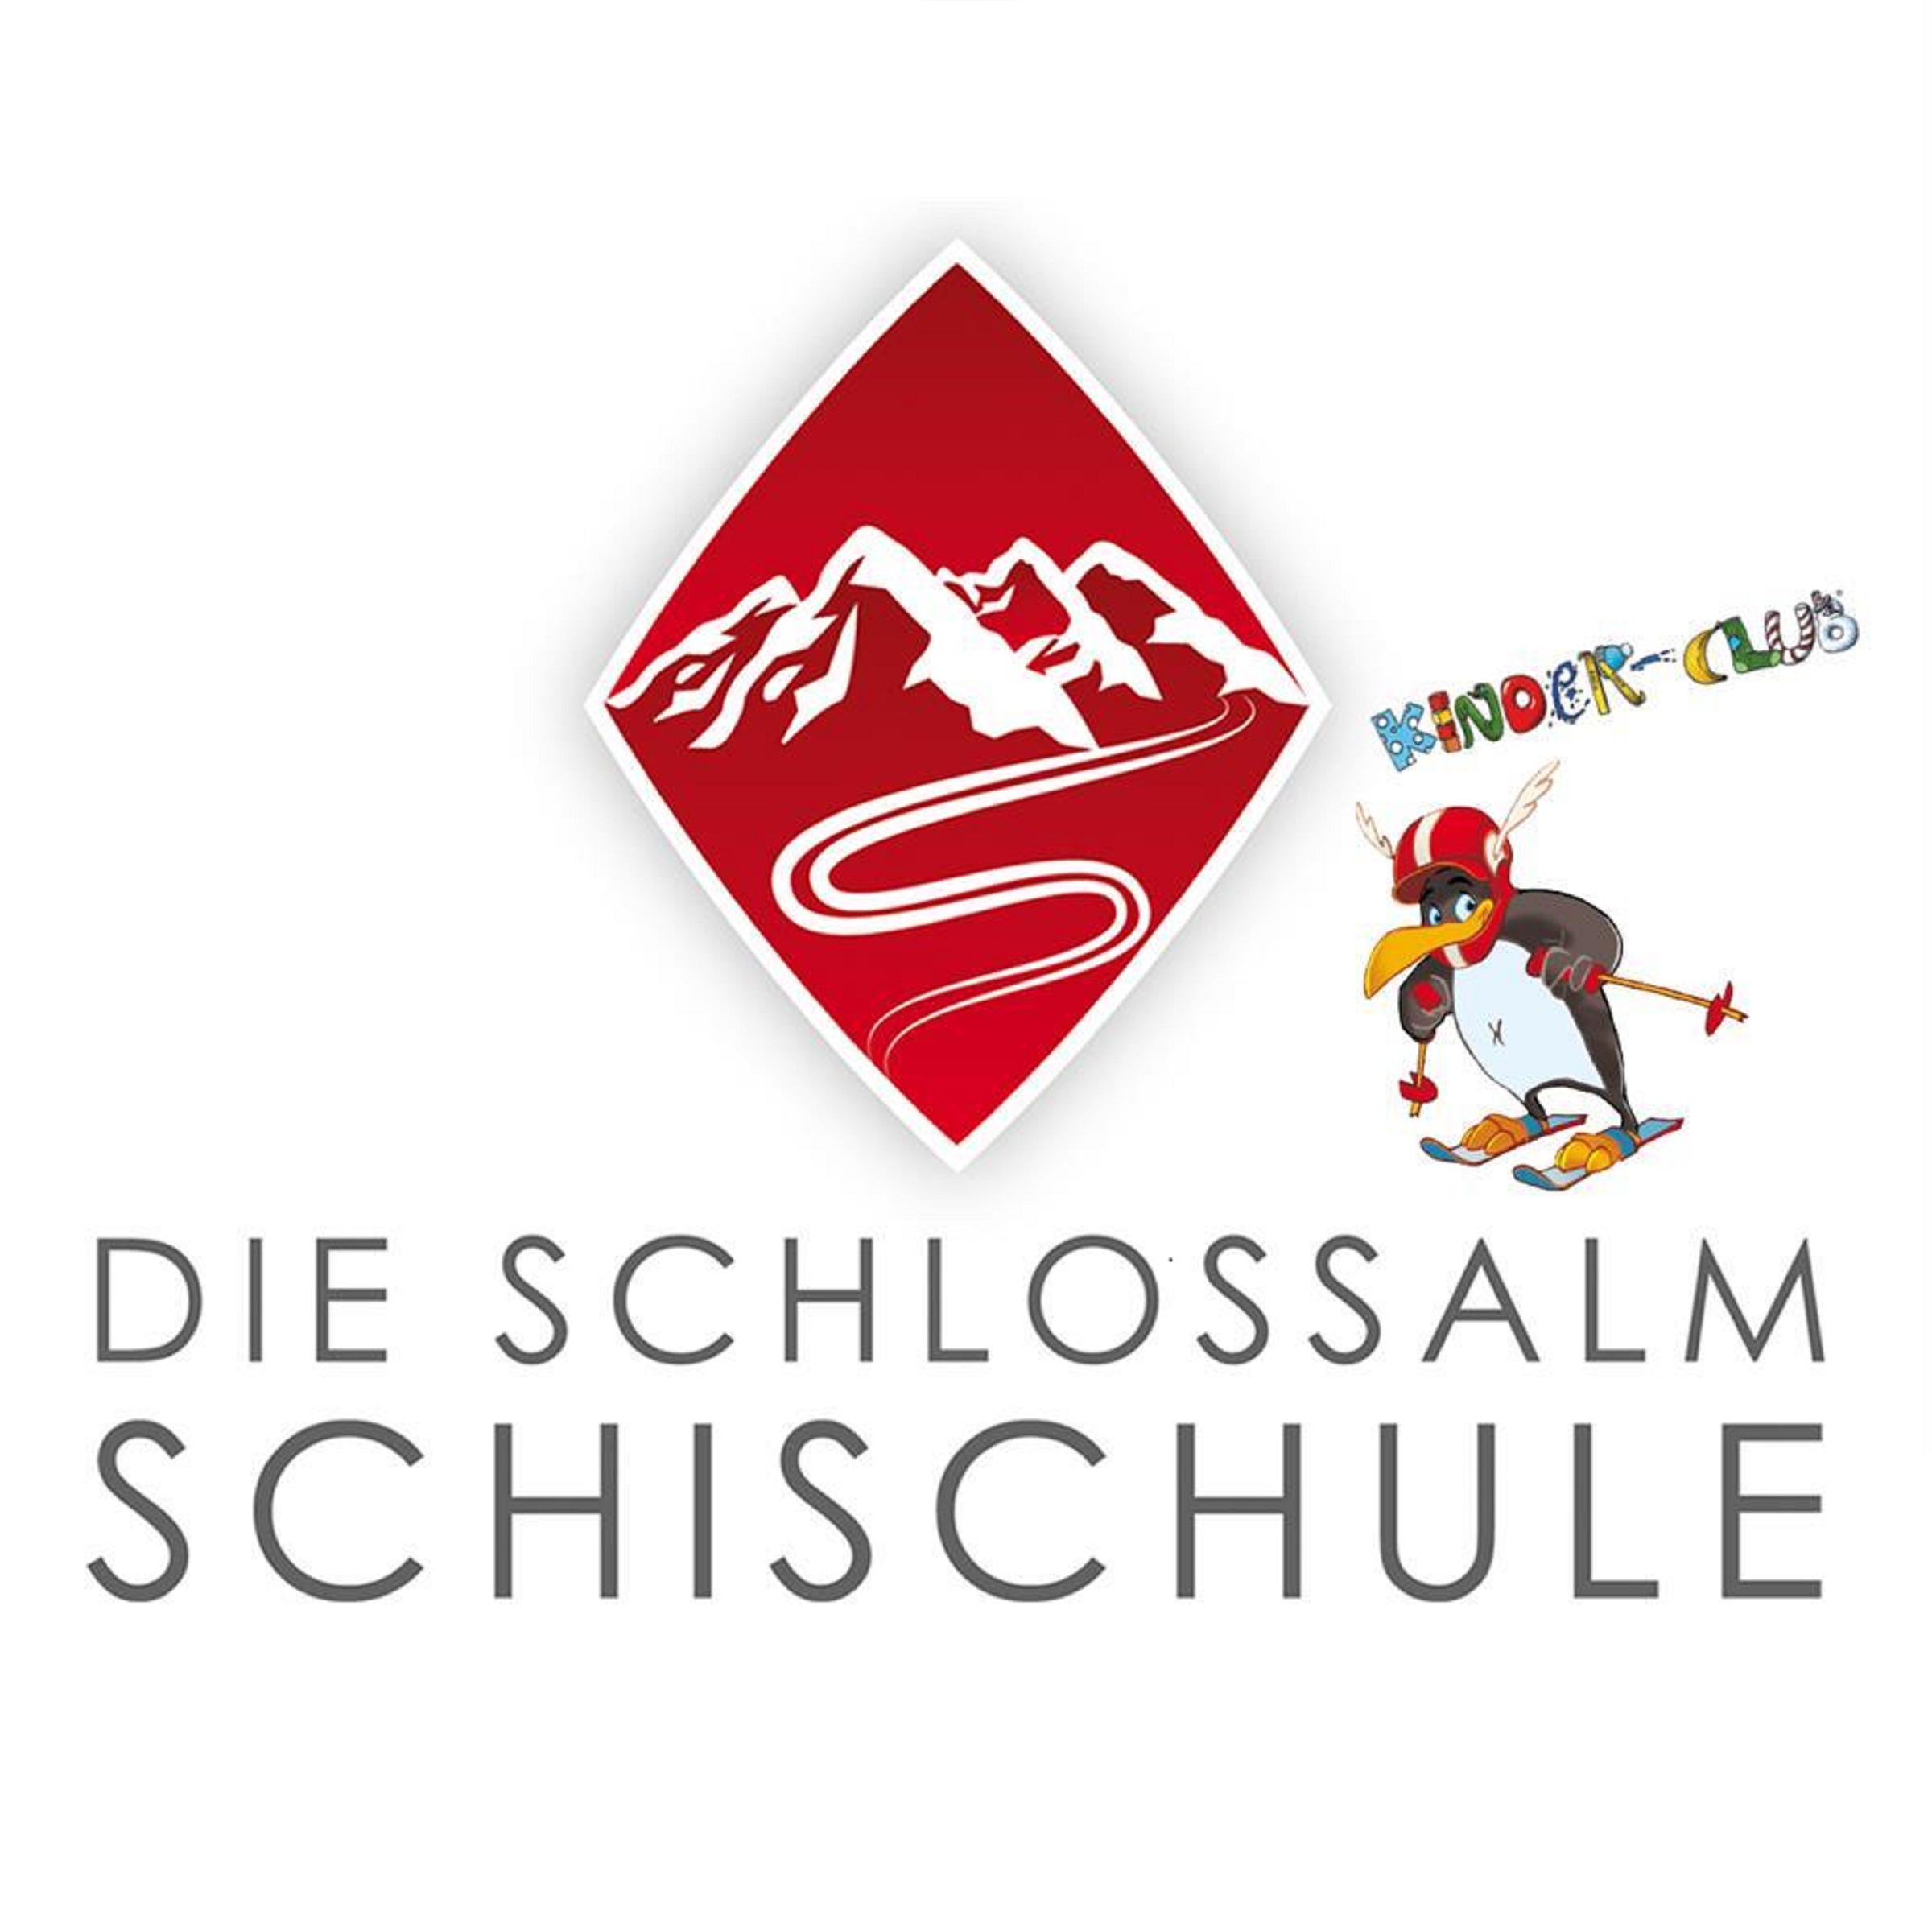 Premium Skischule Schlossalm